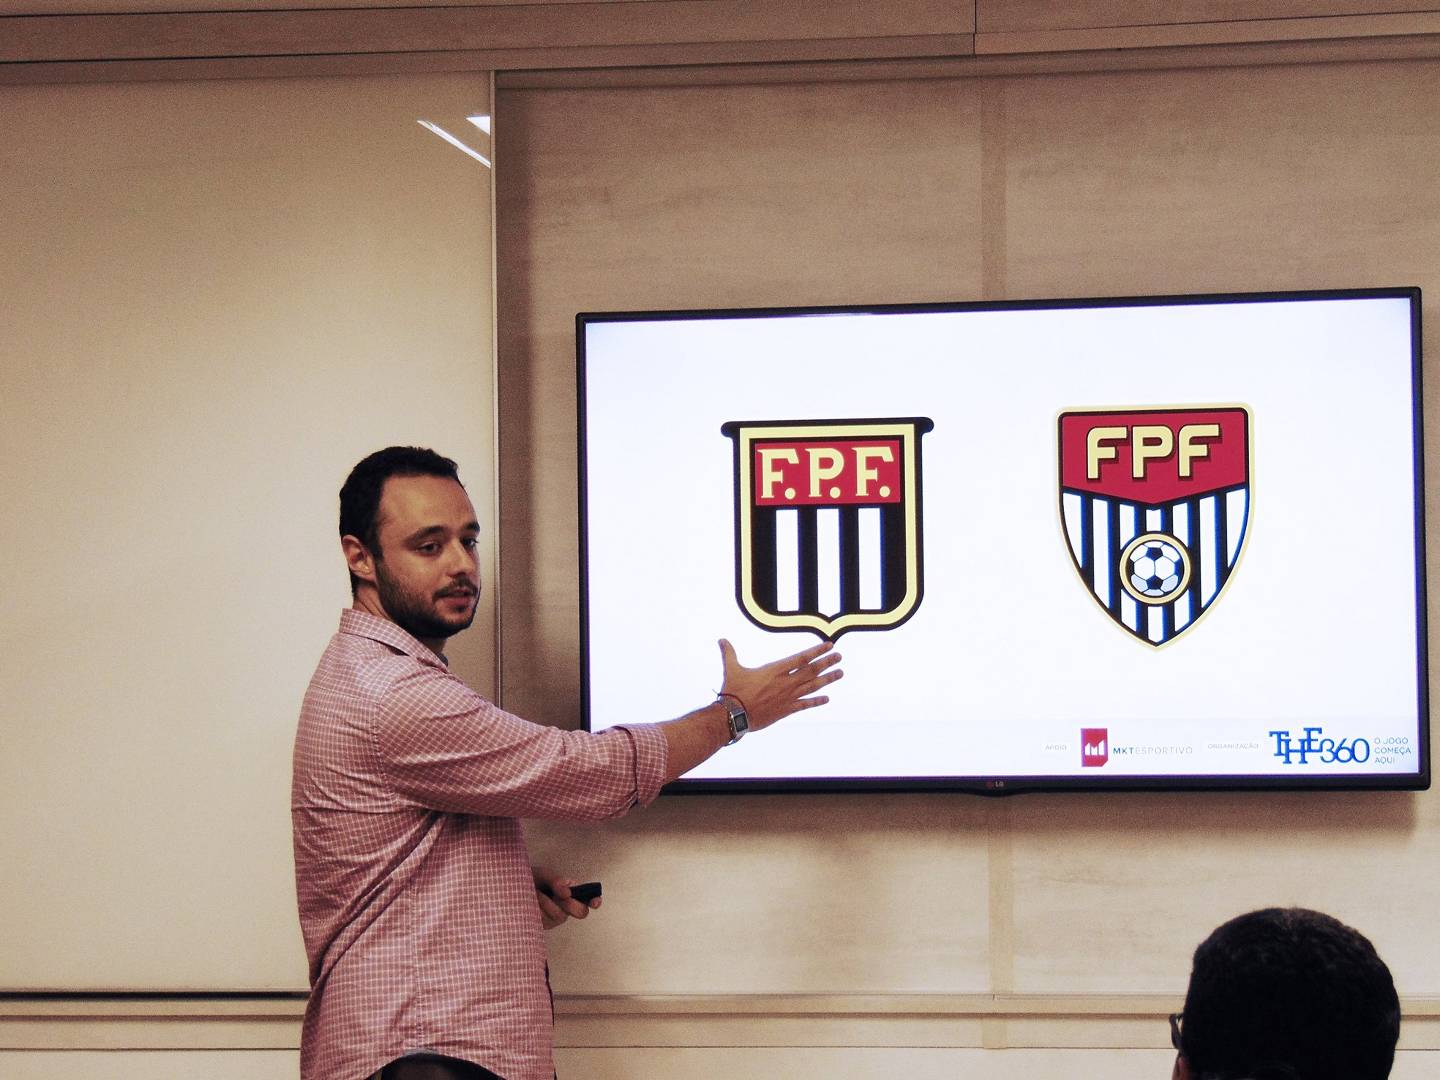 Aula sobre a nova gestão da Federação Paulista de Futebol